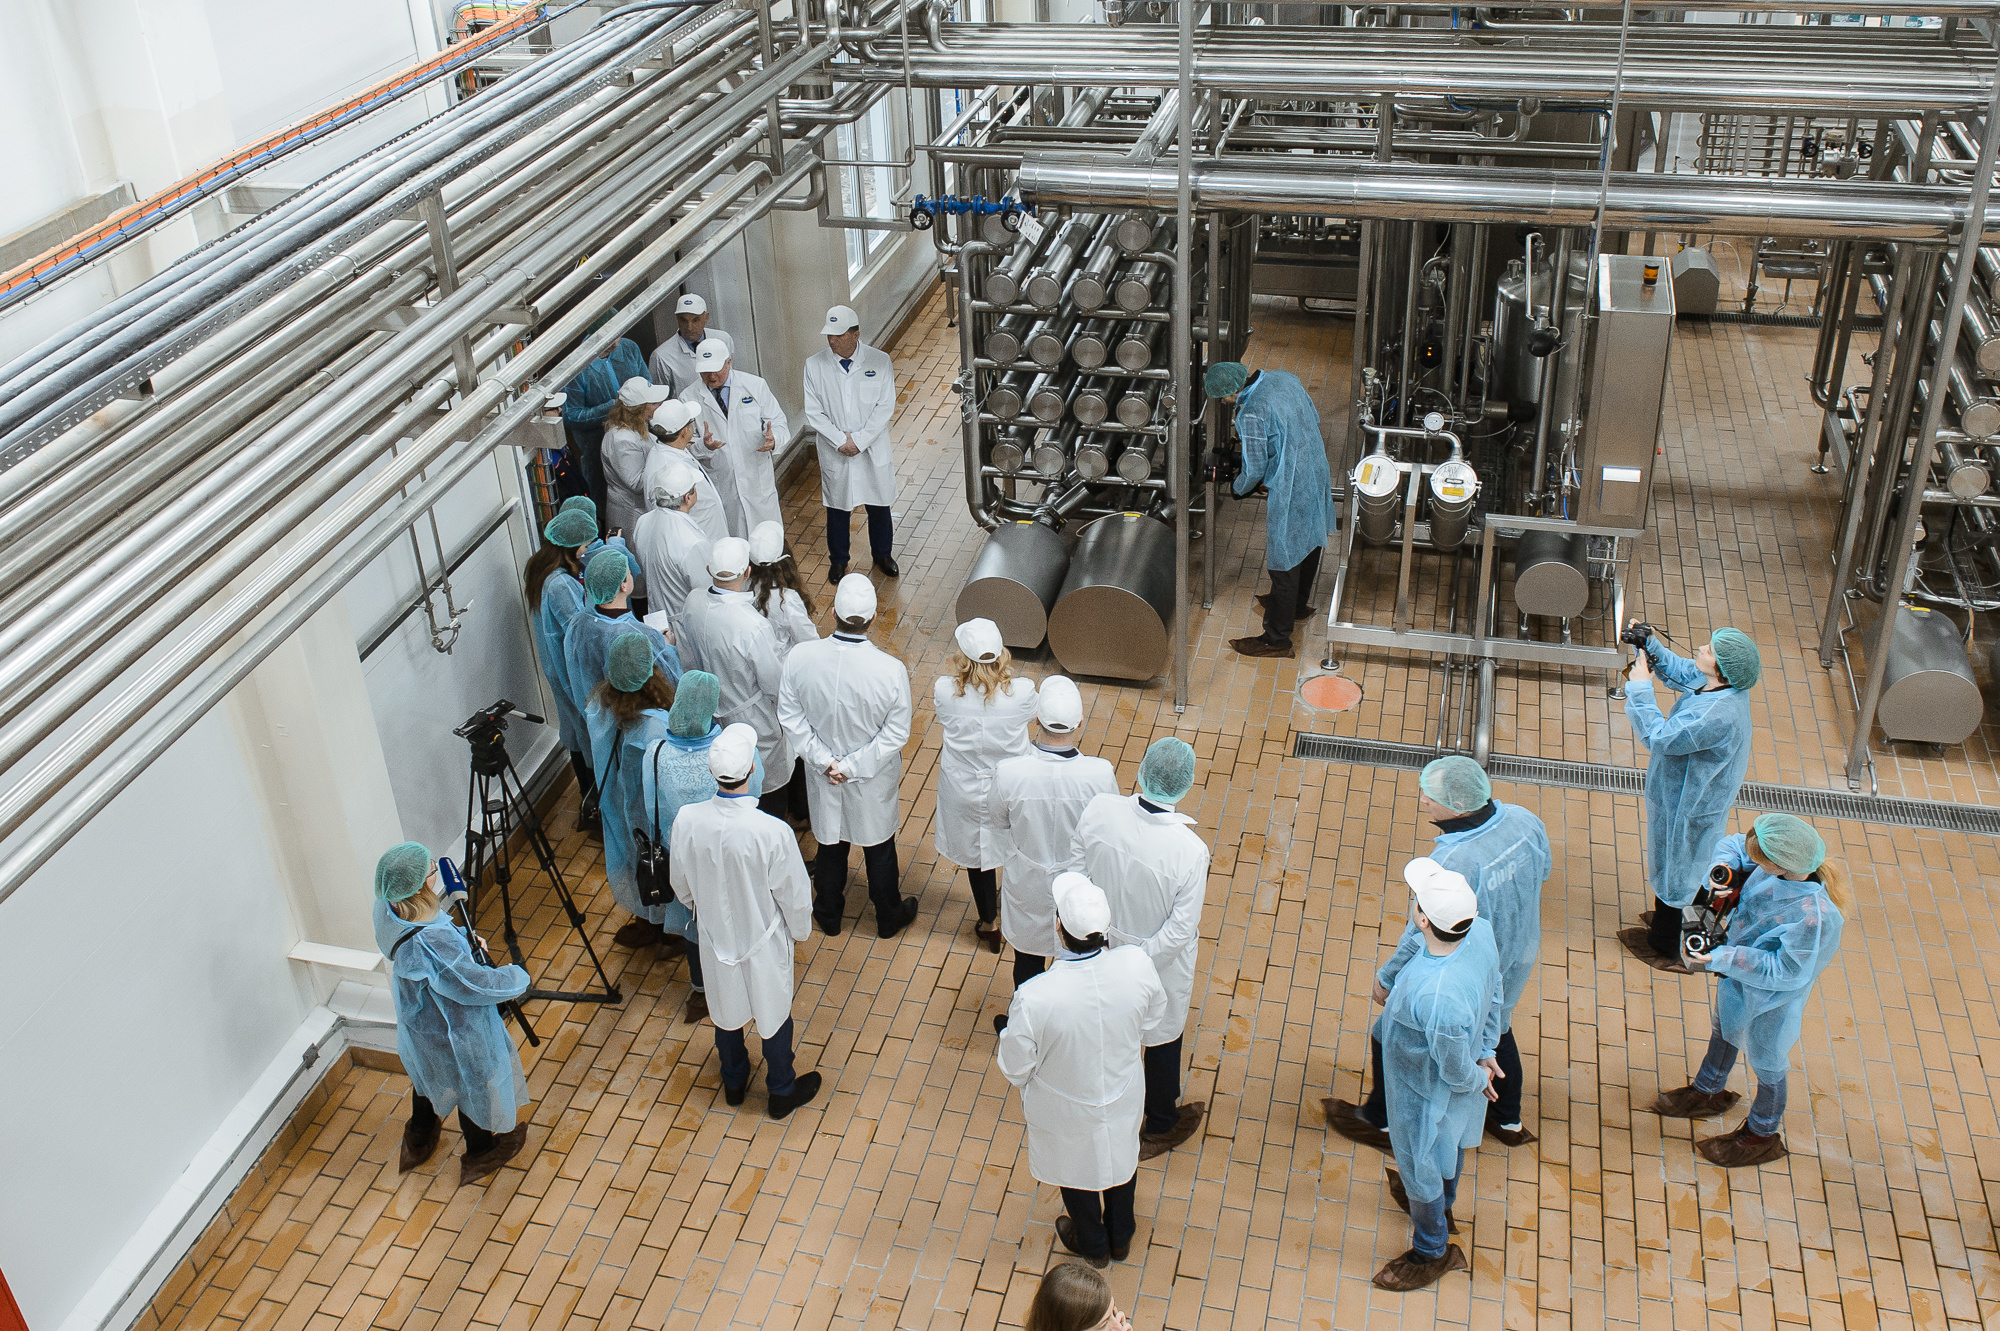 Воронежская область получит поддержку правительства на обновление мощностей предприятия по производству сухих молочных продуктов